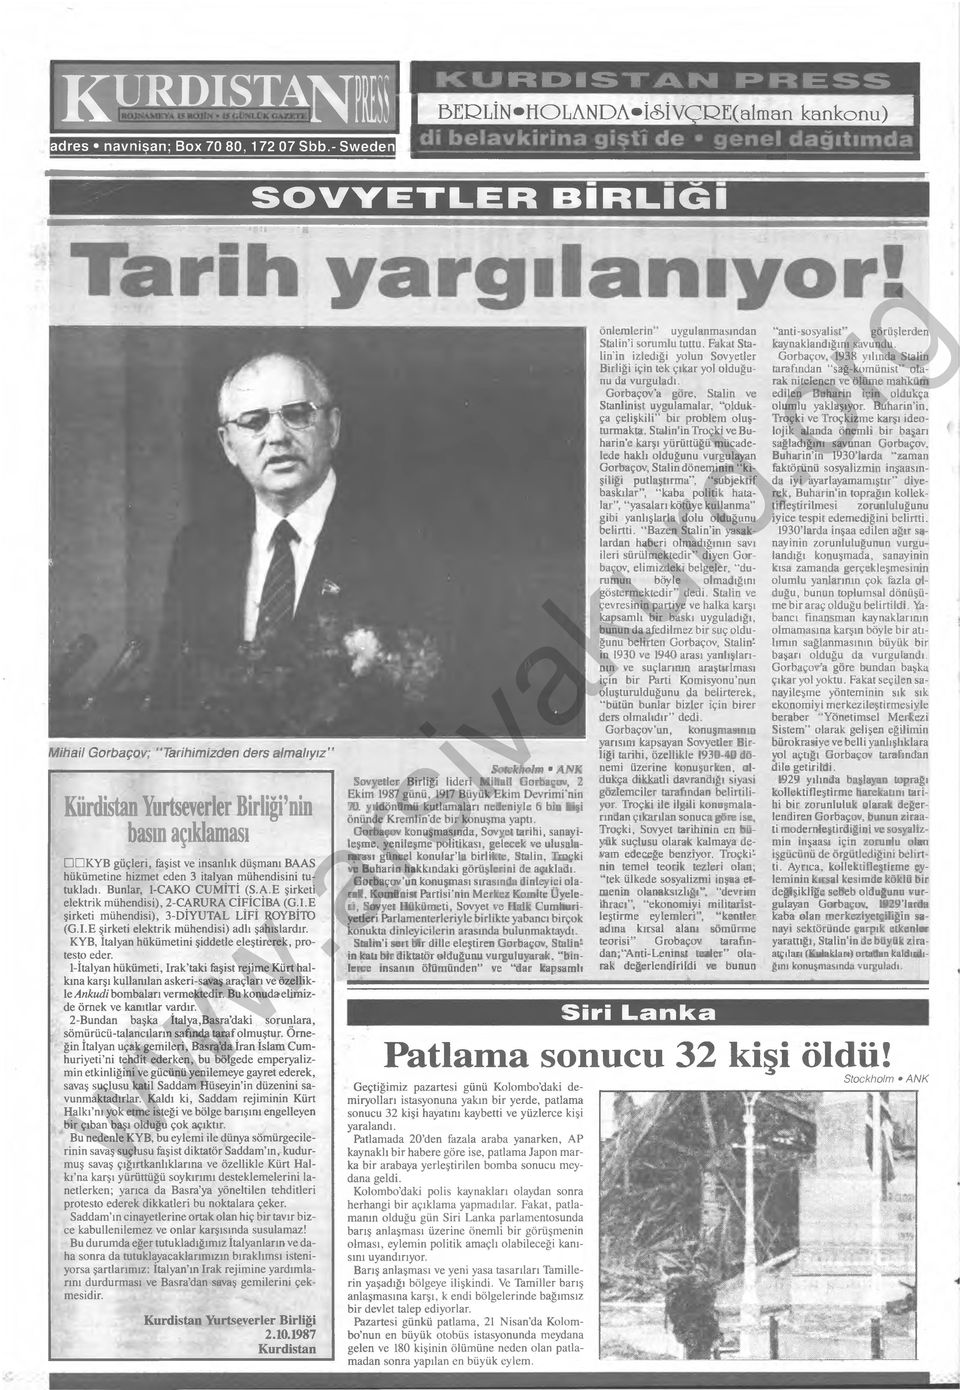 » Mihail Gorbaçov; Tarihimizden ders almalıyız Kürdistan Yurtseverler Birliği nin basın açıklaması K Y B güçleri, faşist ve insanlık düşmanı BAAS hükümetine hizmet eden 3 İtalyan mühendisini